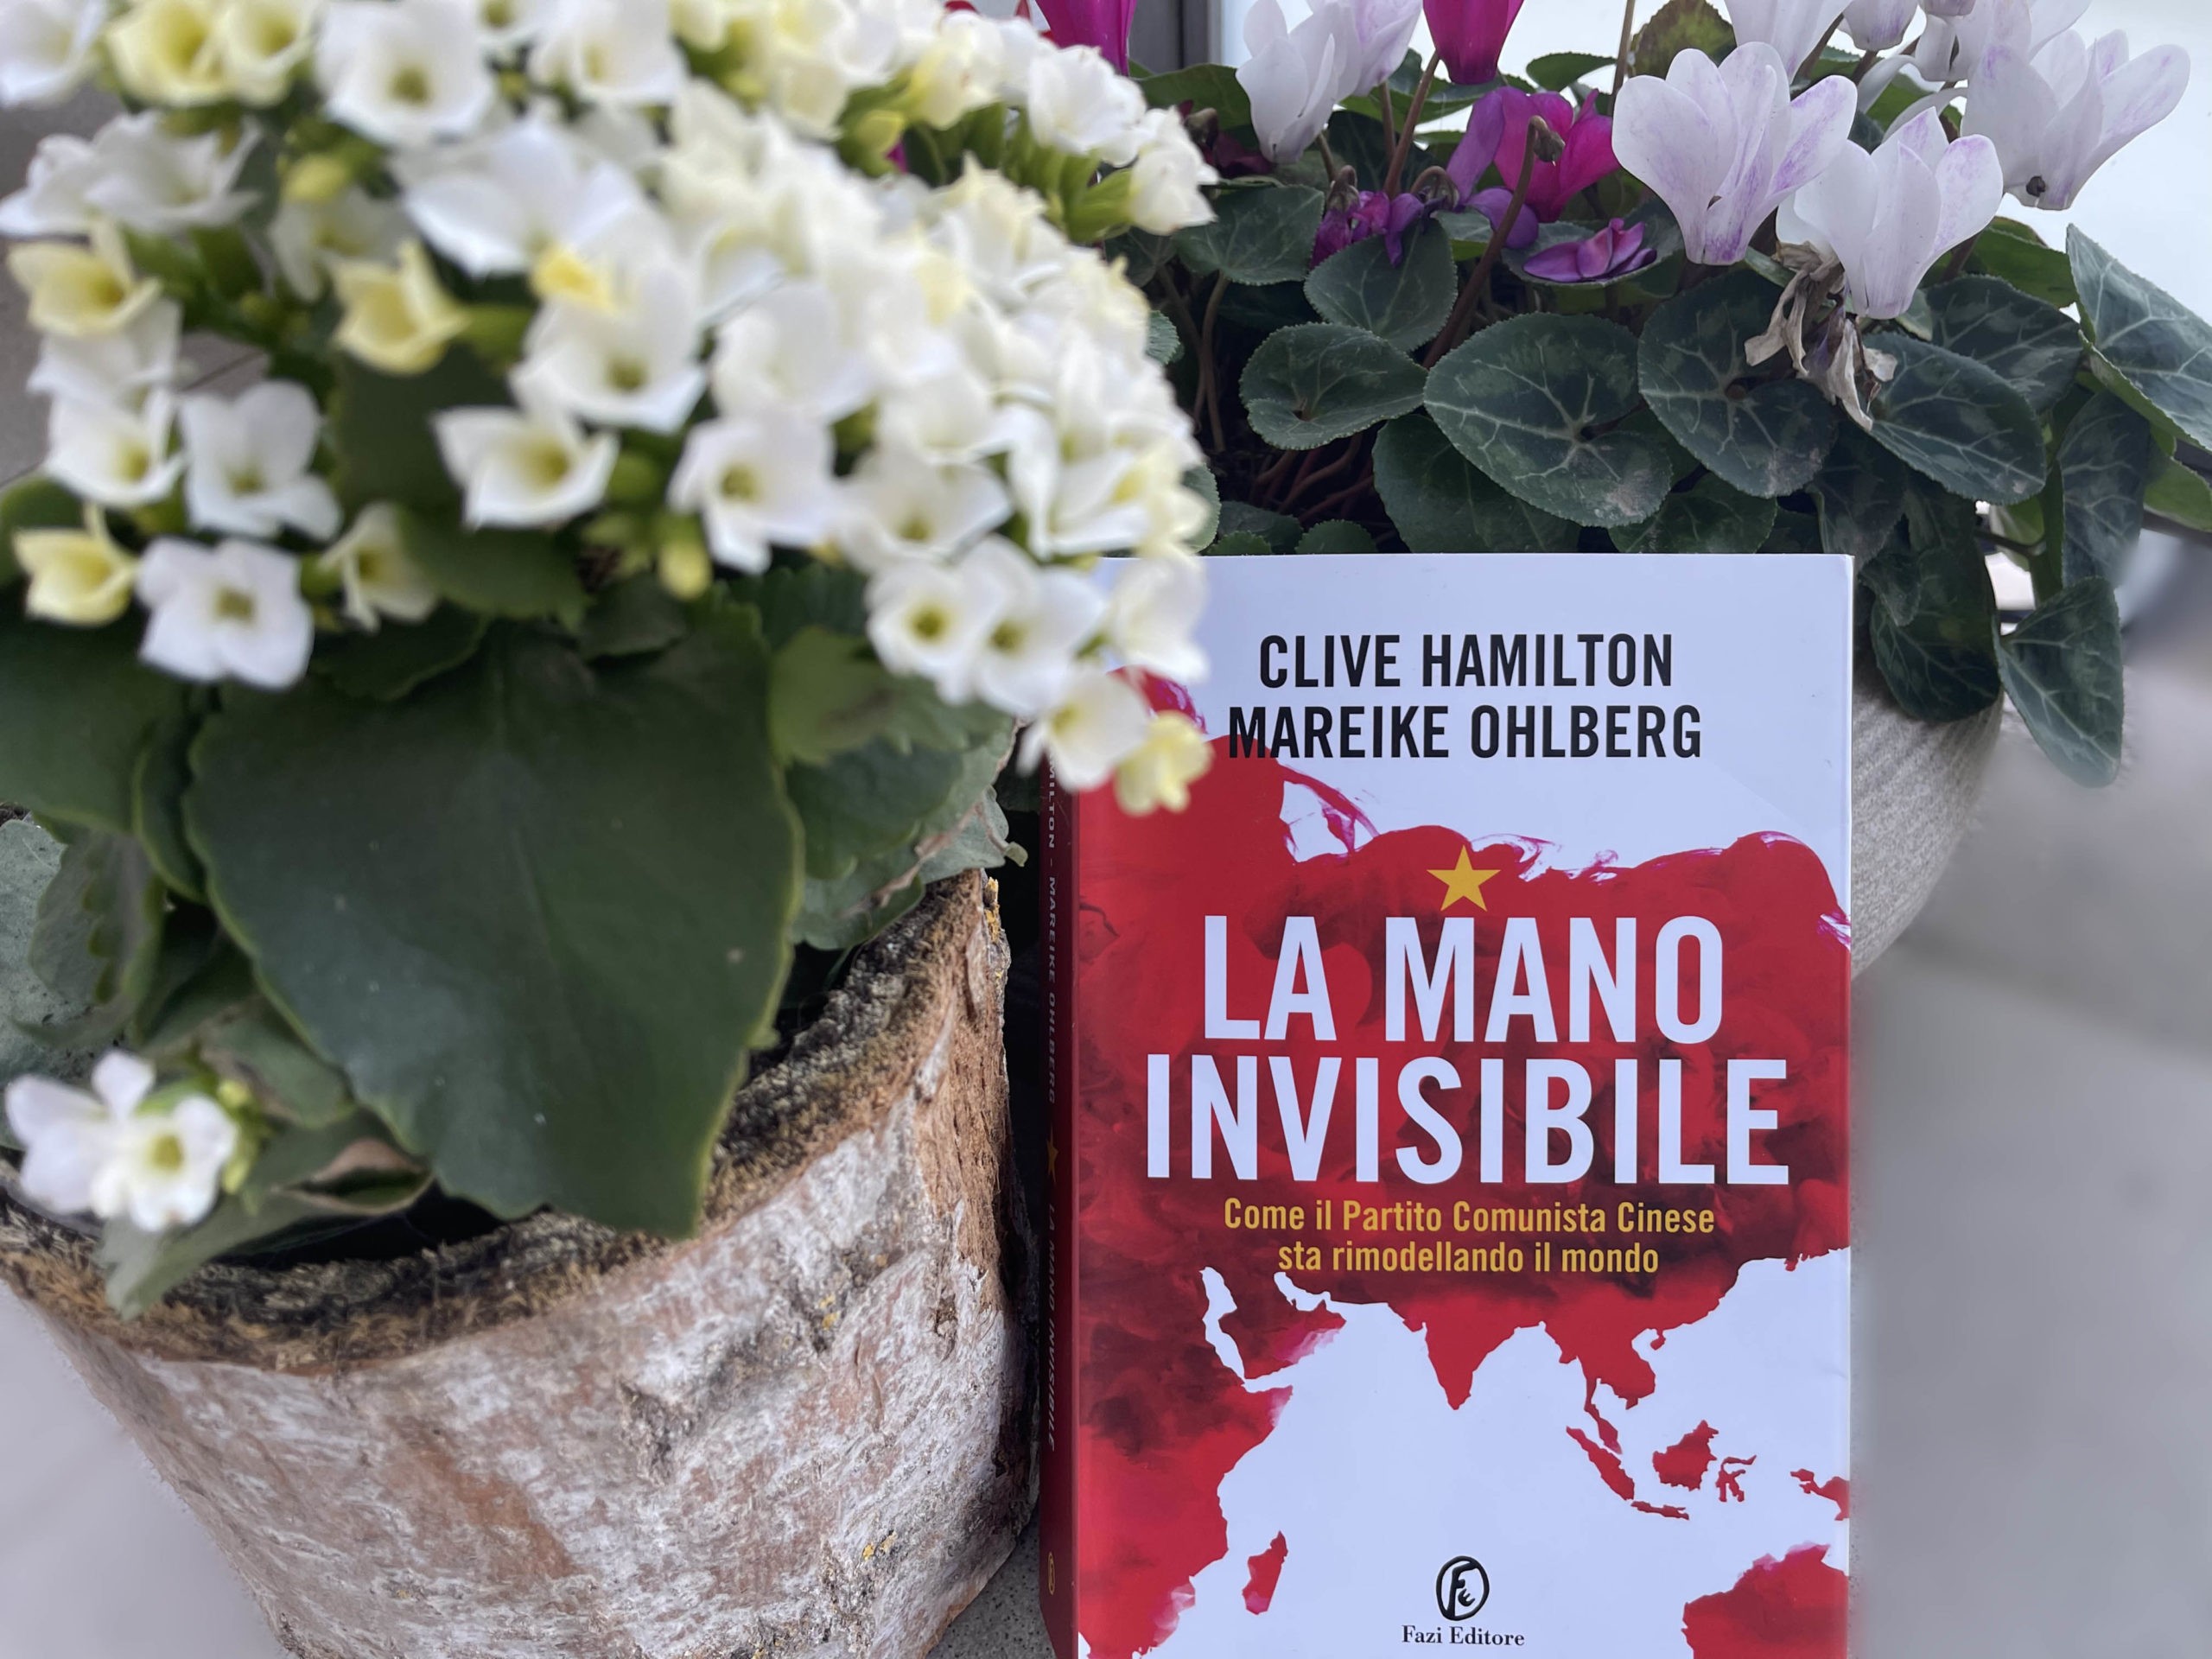 Mareike Ohlberg sul suo ‘La Mano Invisibile’: “Sarebbe errato pensare che il Partito Comunista Cinese abbia conquistato tutti, ma non riesco a ricordare un solo Stato in cui non abbiano almeno un ‘amico’”